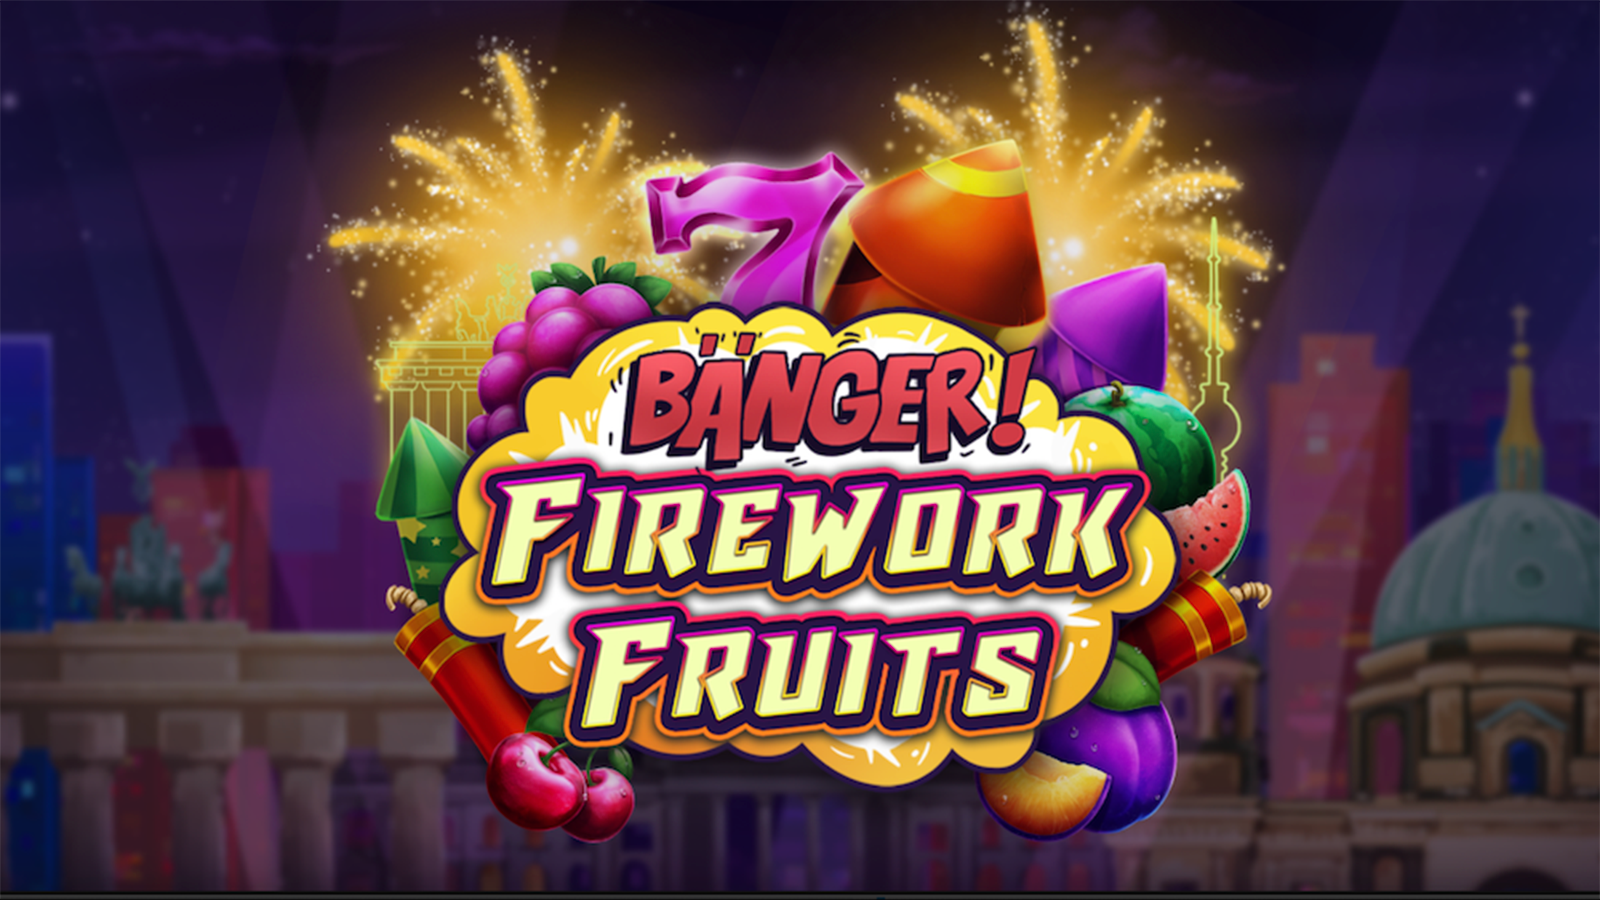 Apparat Gaming's Banger Firework Fruits